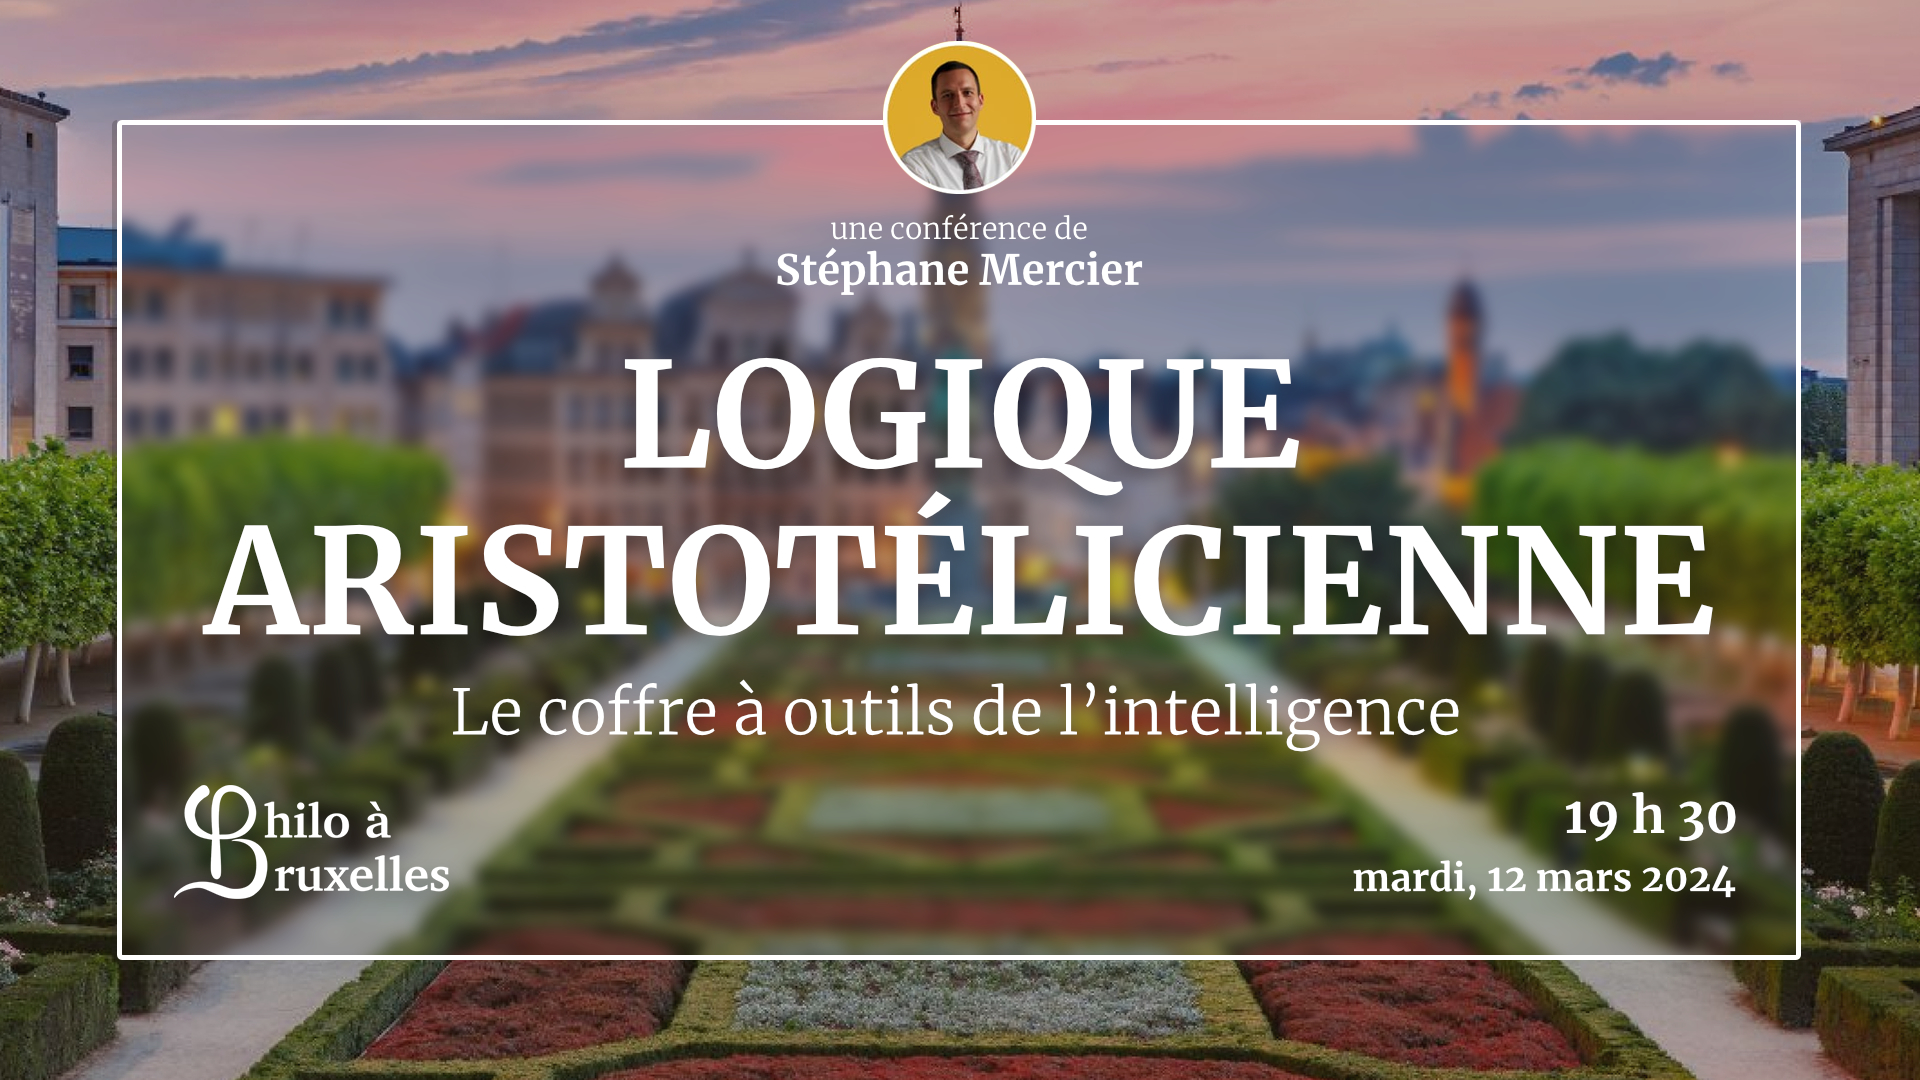 Conférence de Stéphane Mercier - Logique aristotélicienne : instrument de la pensée